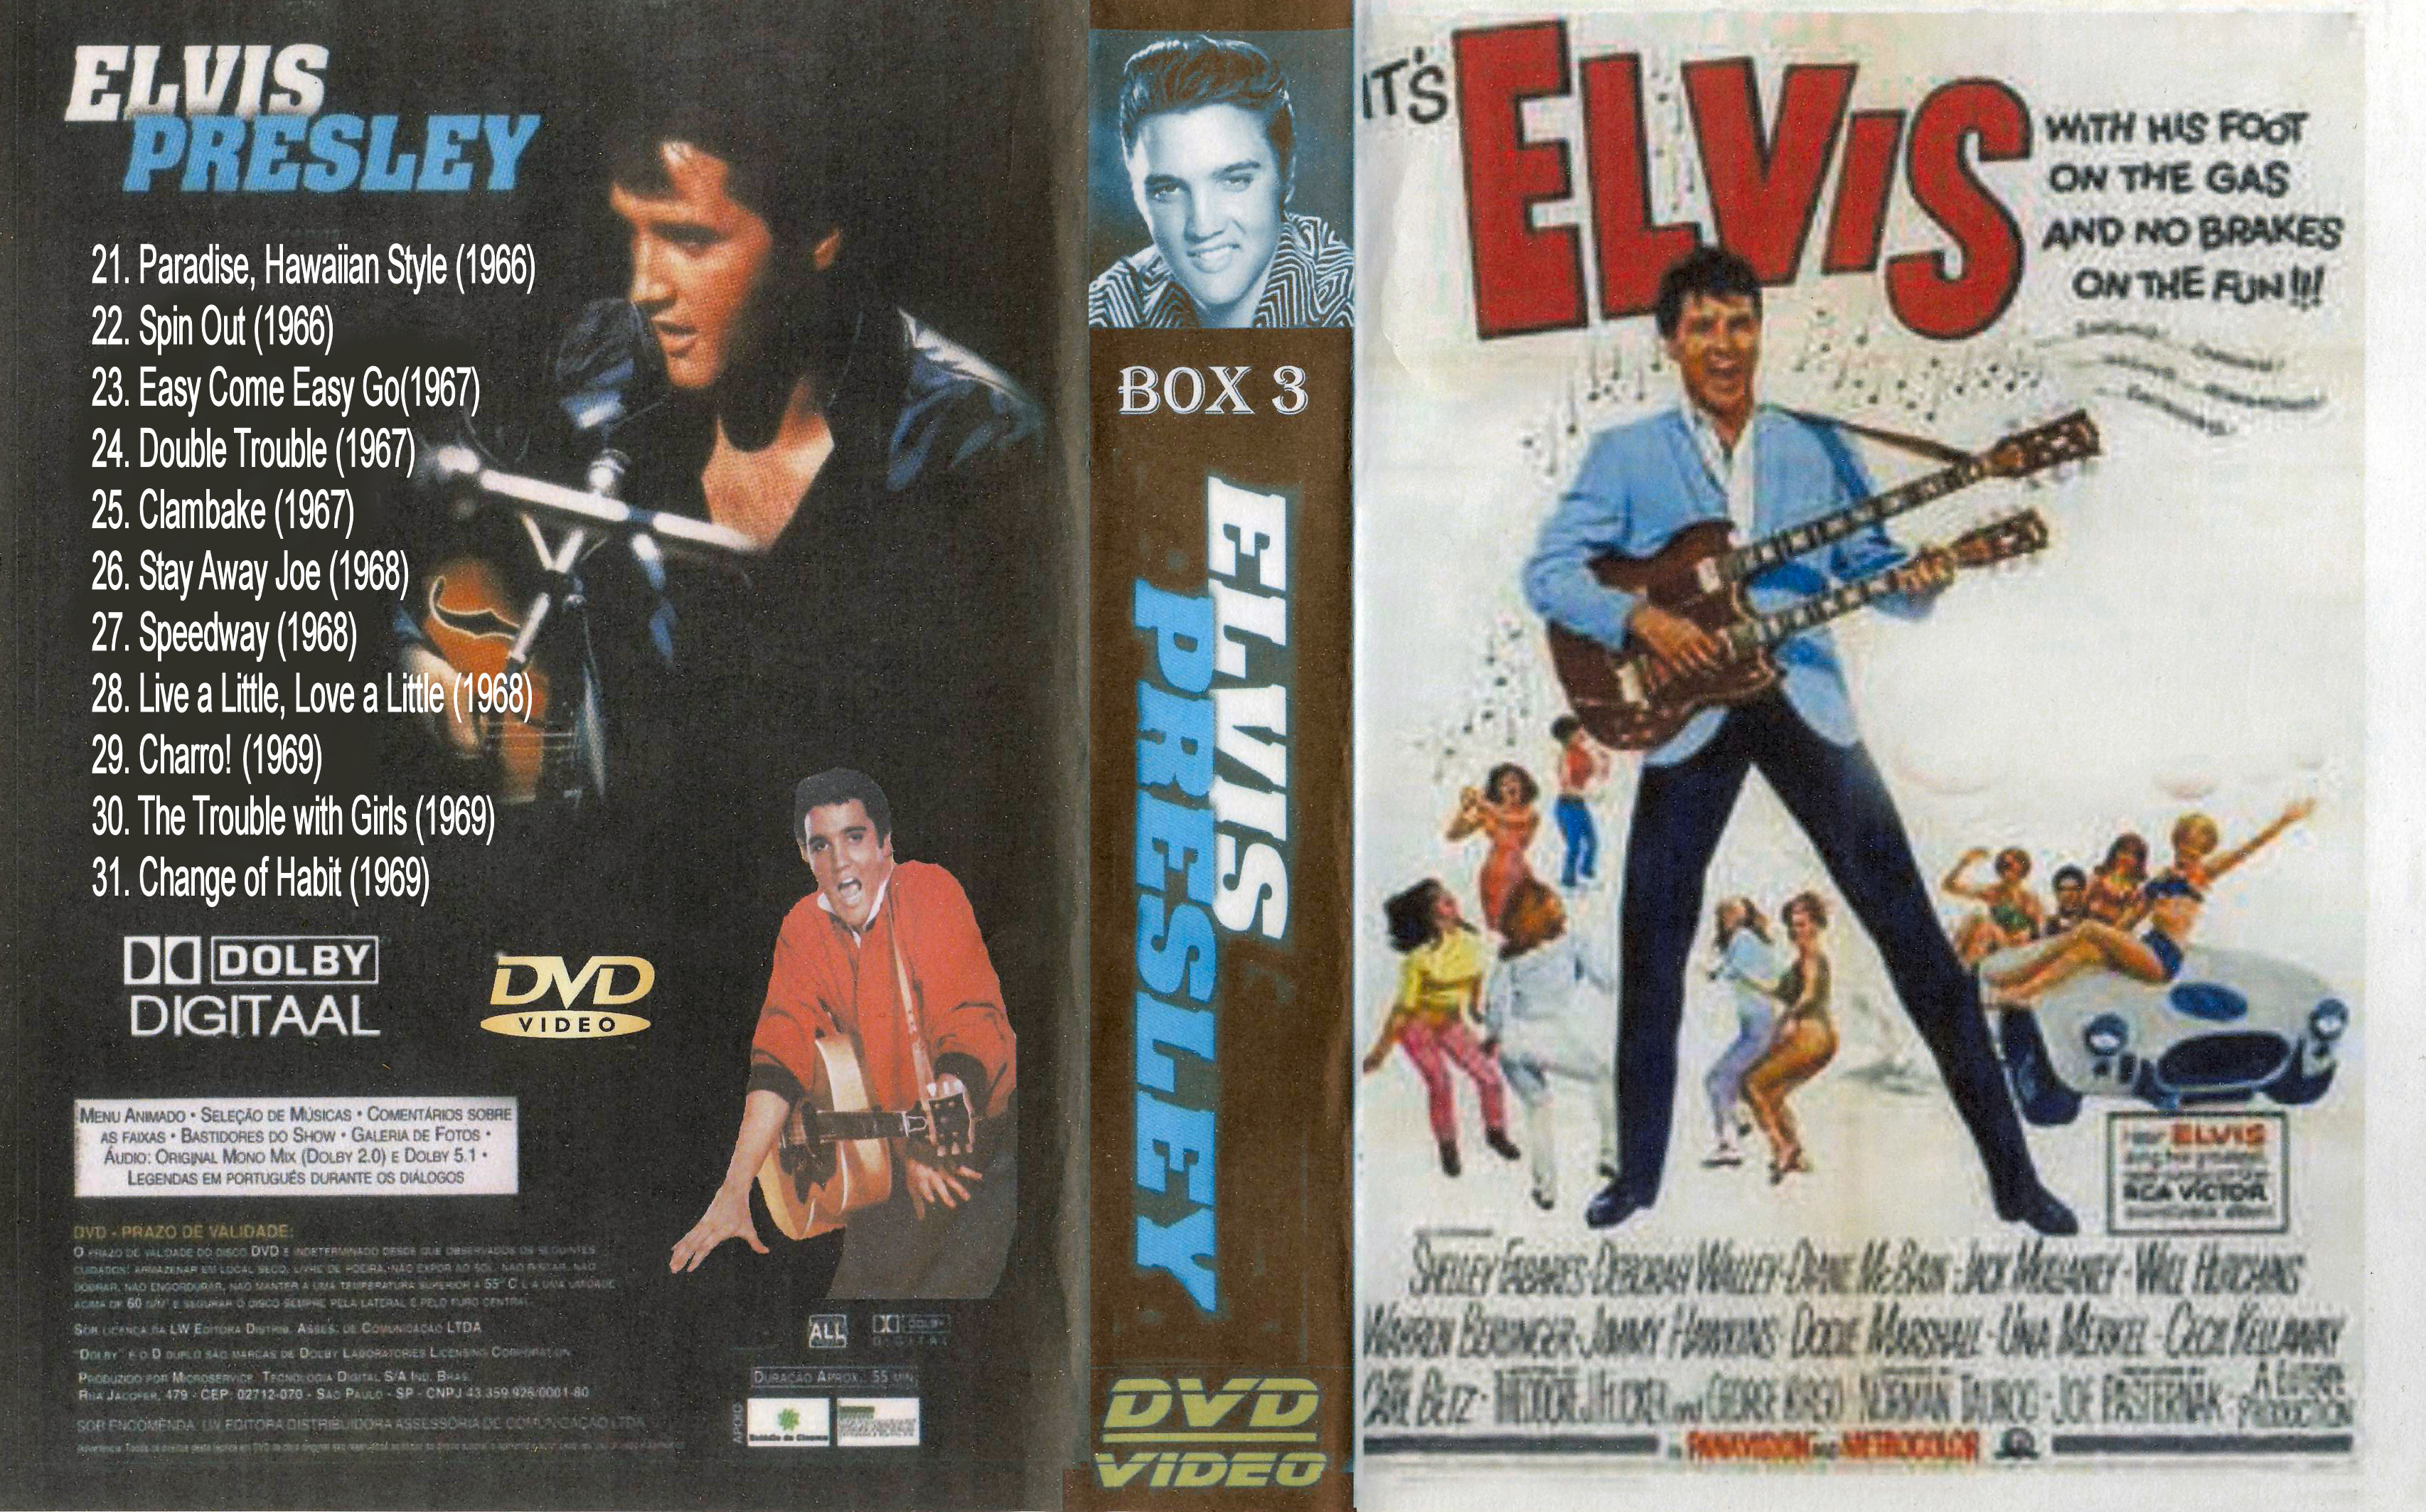 Elvis Collectie ( 29. Charro! (1969) DvD 29 van 31